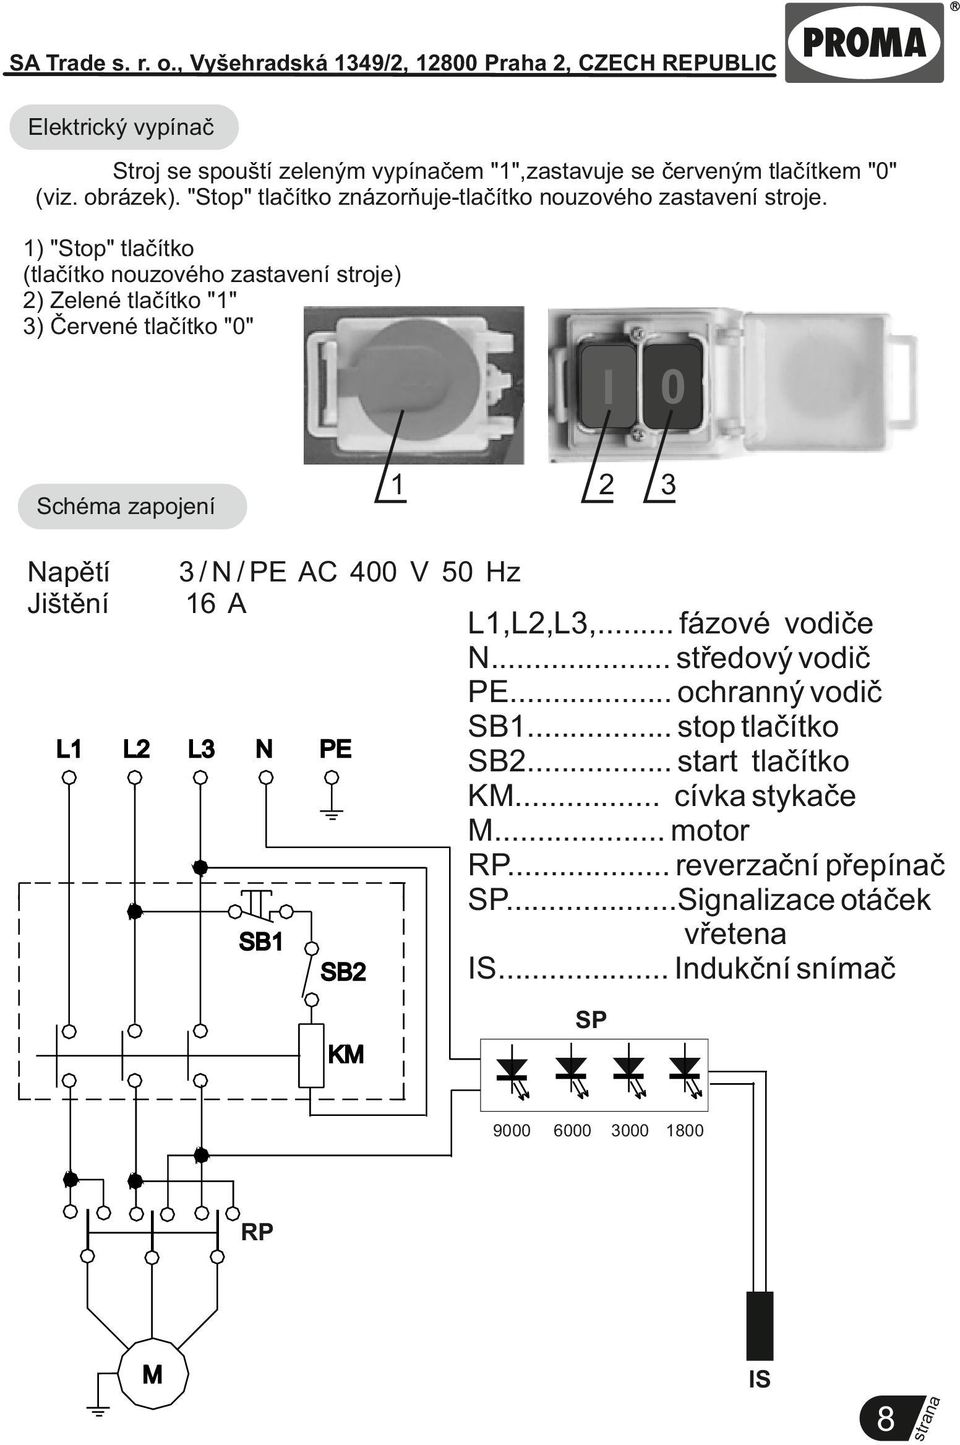 1) "Stop" tlačítko (tlačítko nouzového zastavení stroje) 2) Zelené tlačítko "1" 3) Červené tlačítko "0" I 0 Napětí Jištění 3 3 / N / PE AC 400 V 50 Hz 16